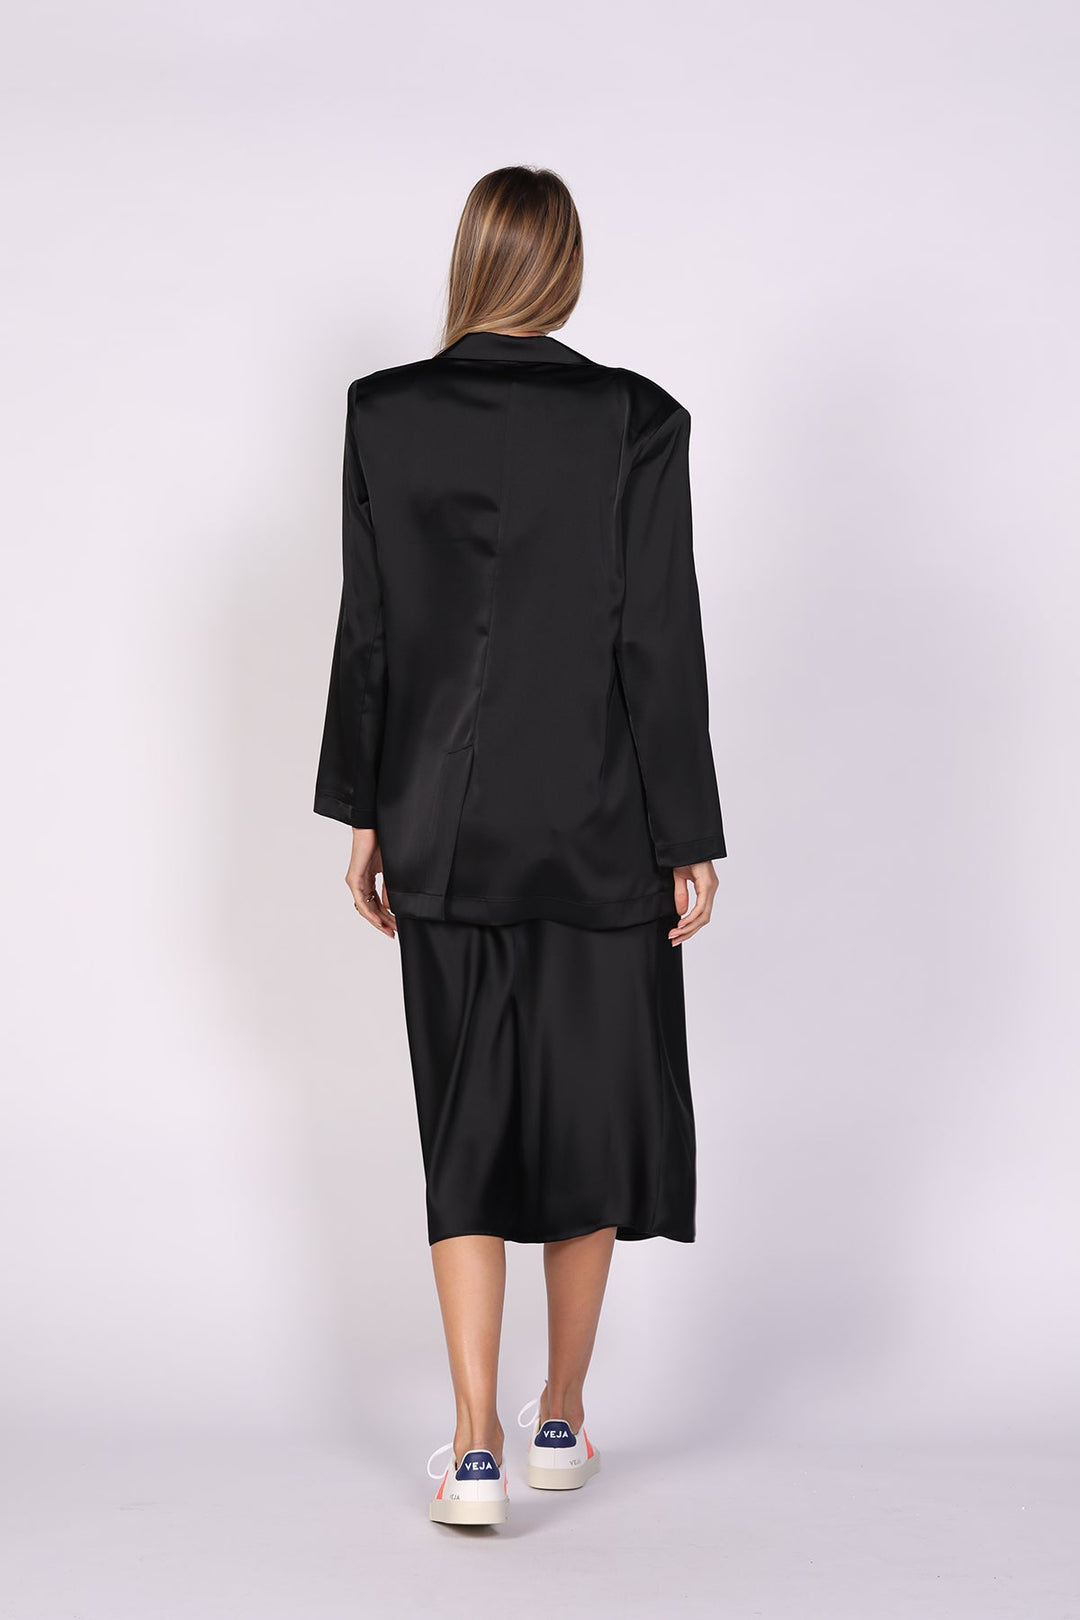 חצאית אלכס בצבע שחור - Dana Sidi